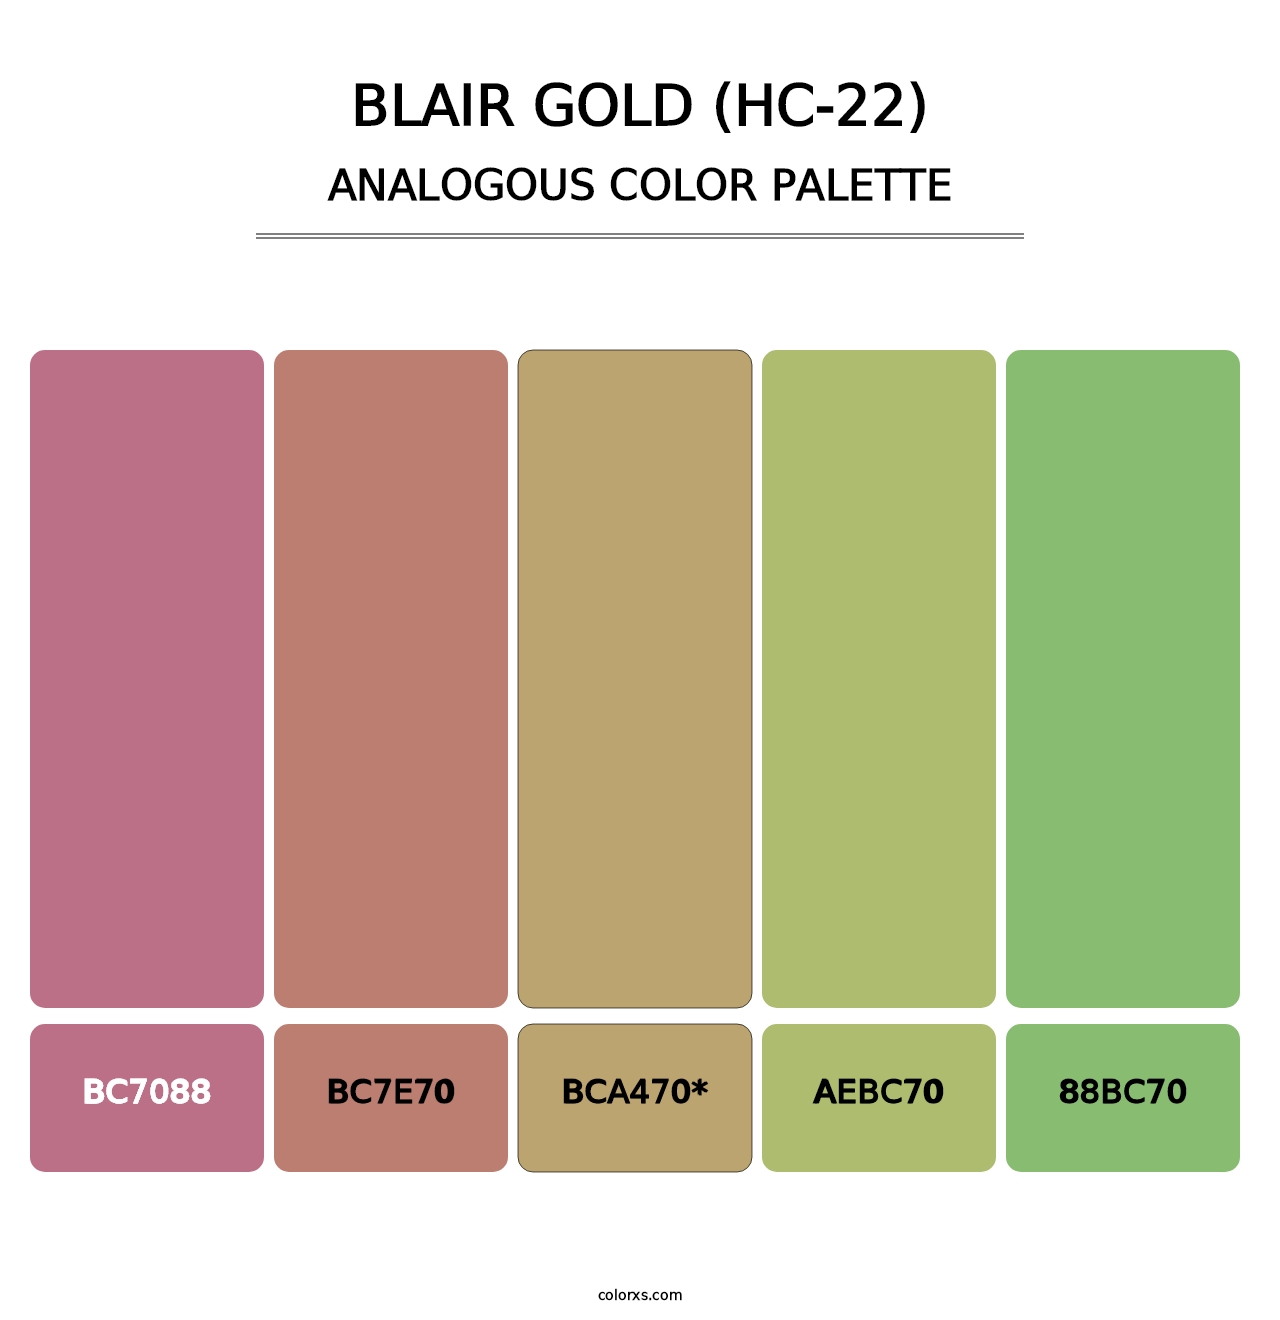 Blair Gold (HC-22) - Analogous Color Palette